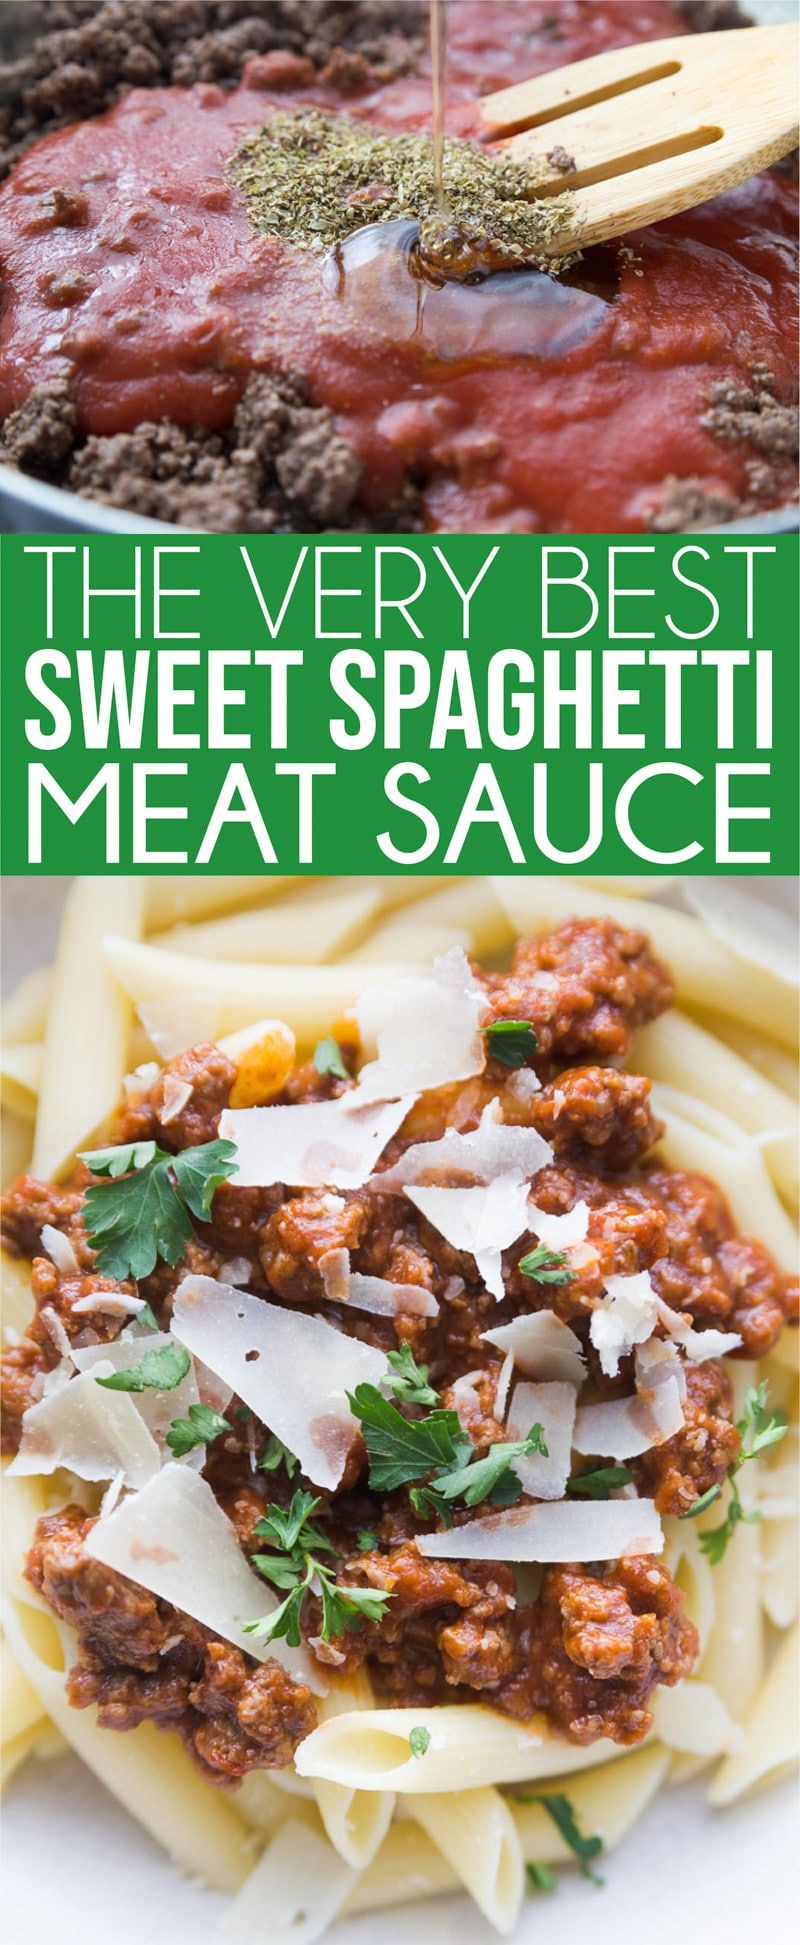 Preprosta domača omaka za špagete, ki je sladka, mesnata in popolnoma okusna! Preprosto je narediti iz nič in eno najboljših zdravih italijanskih omak, kar sem jih kdaj poskusil!